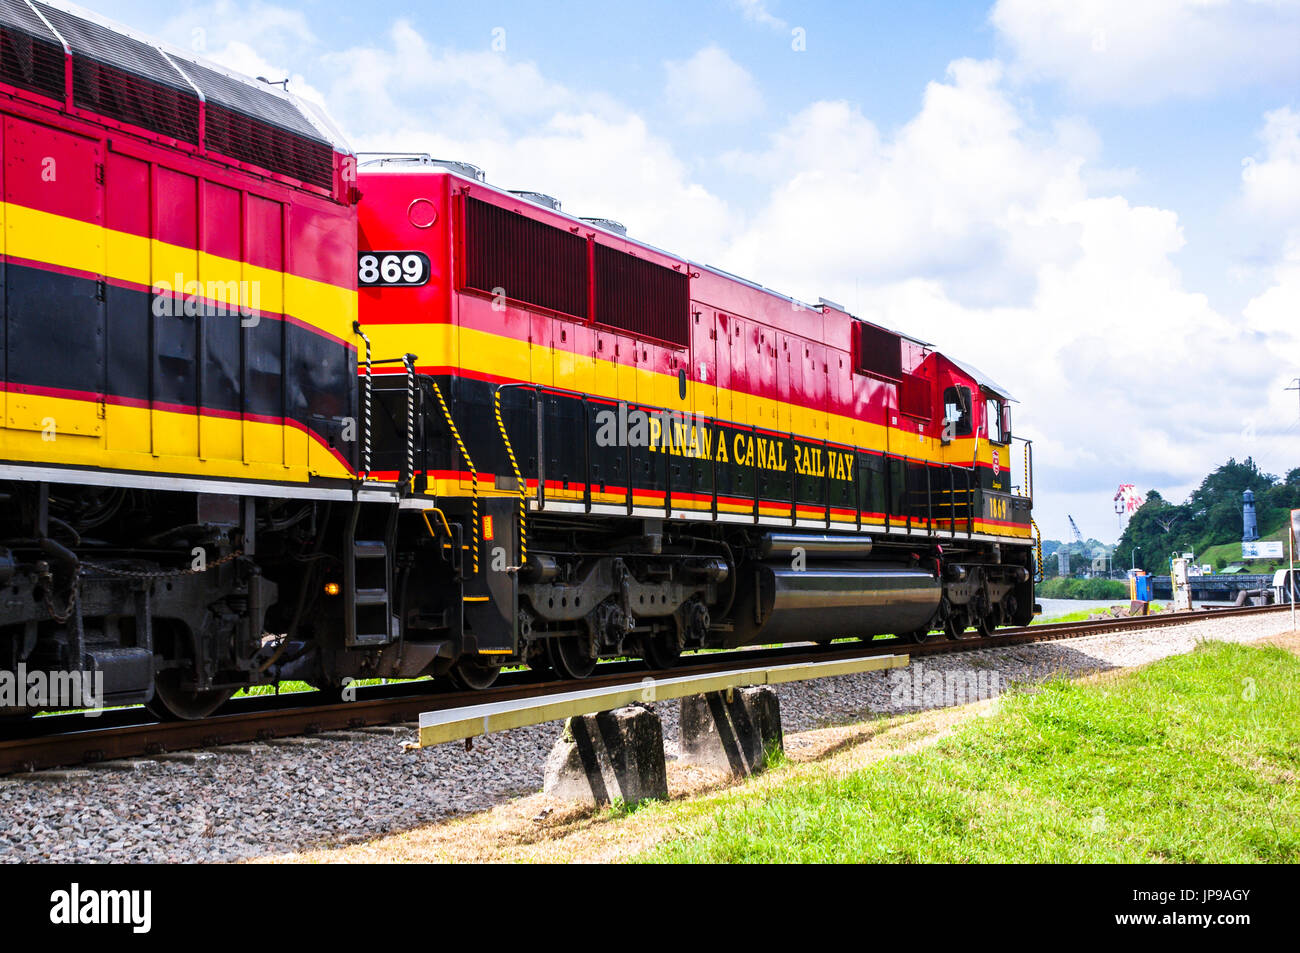 Panama canal railway locomitive Stock Photo